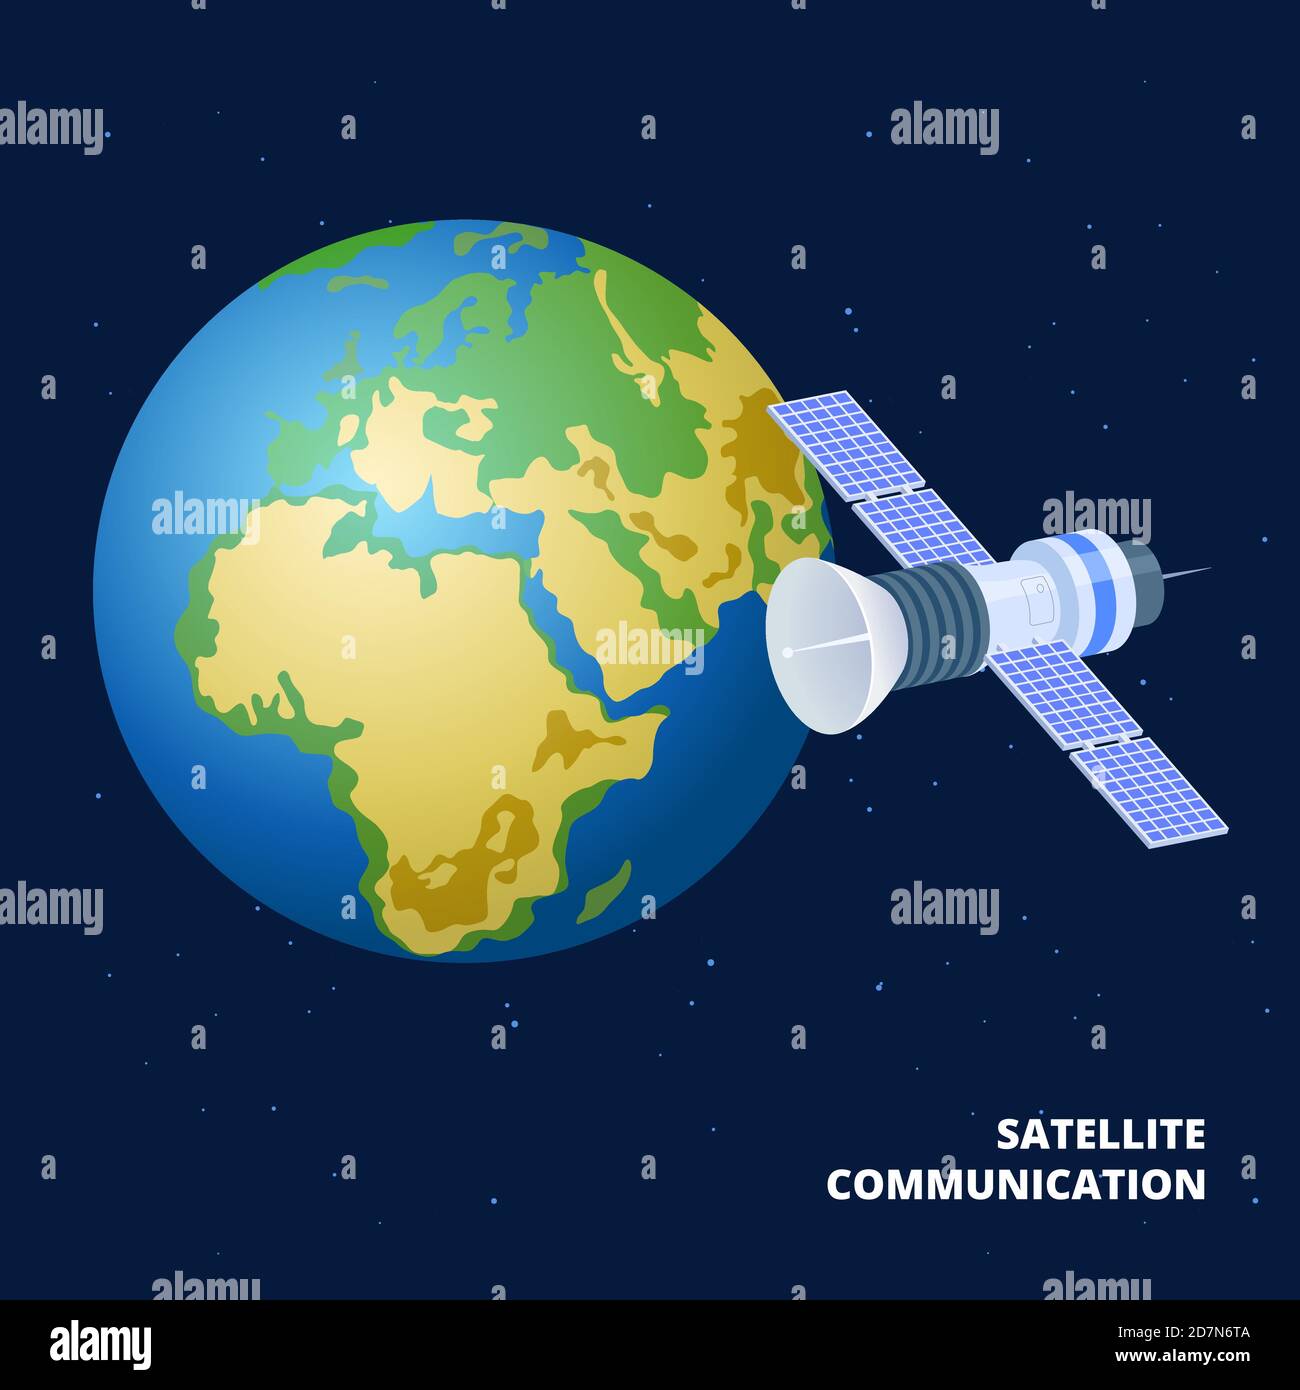 Satellitenkommunikation isometrische Vektordarstellung. Raumschiff und Erde. Satellit für Kommunikation global, Station äußeren Kosmos für imternet Stock Vektor